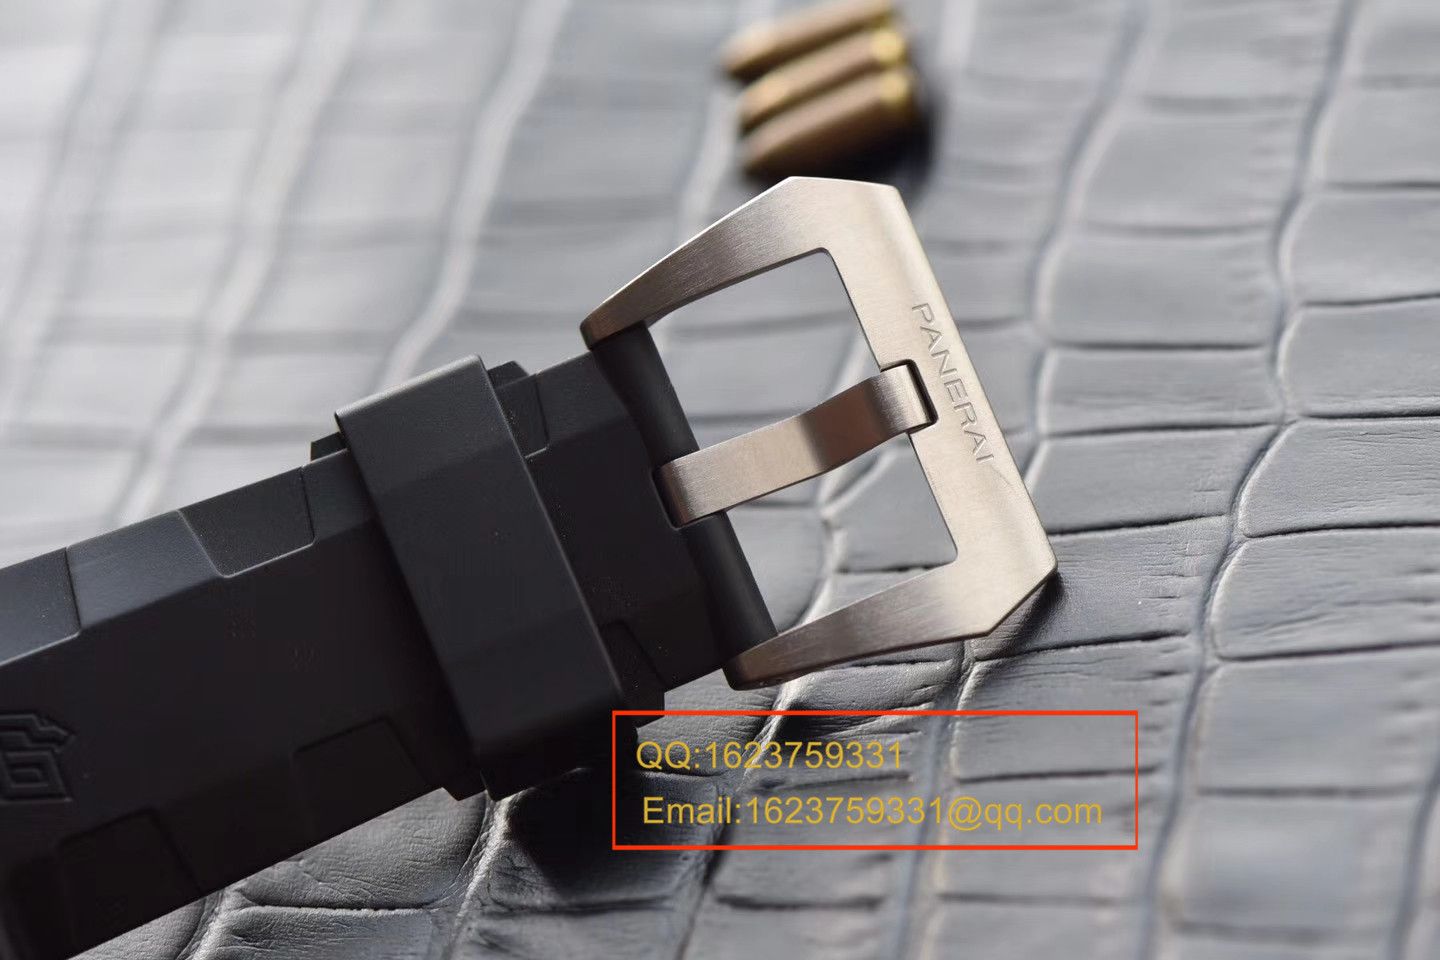 【视频评测XF一比一超A高仿手表】沛纳海LUMINOR 1950系列PAM00692腕表 